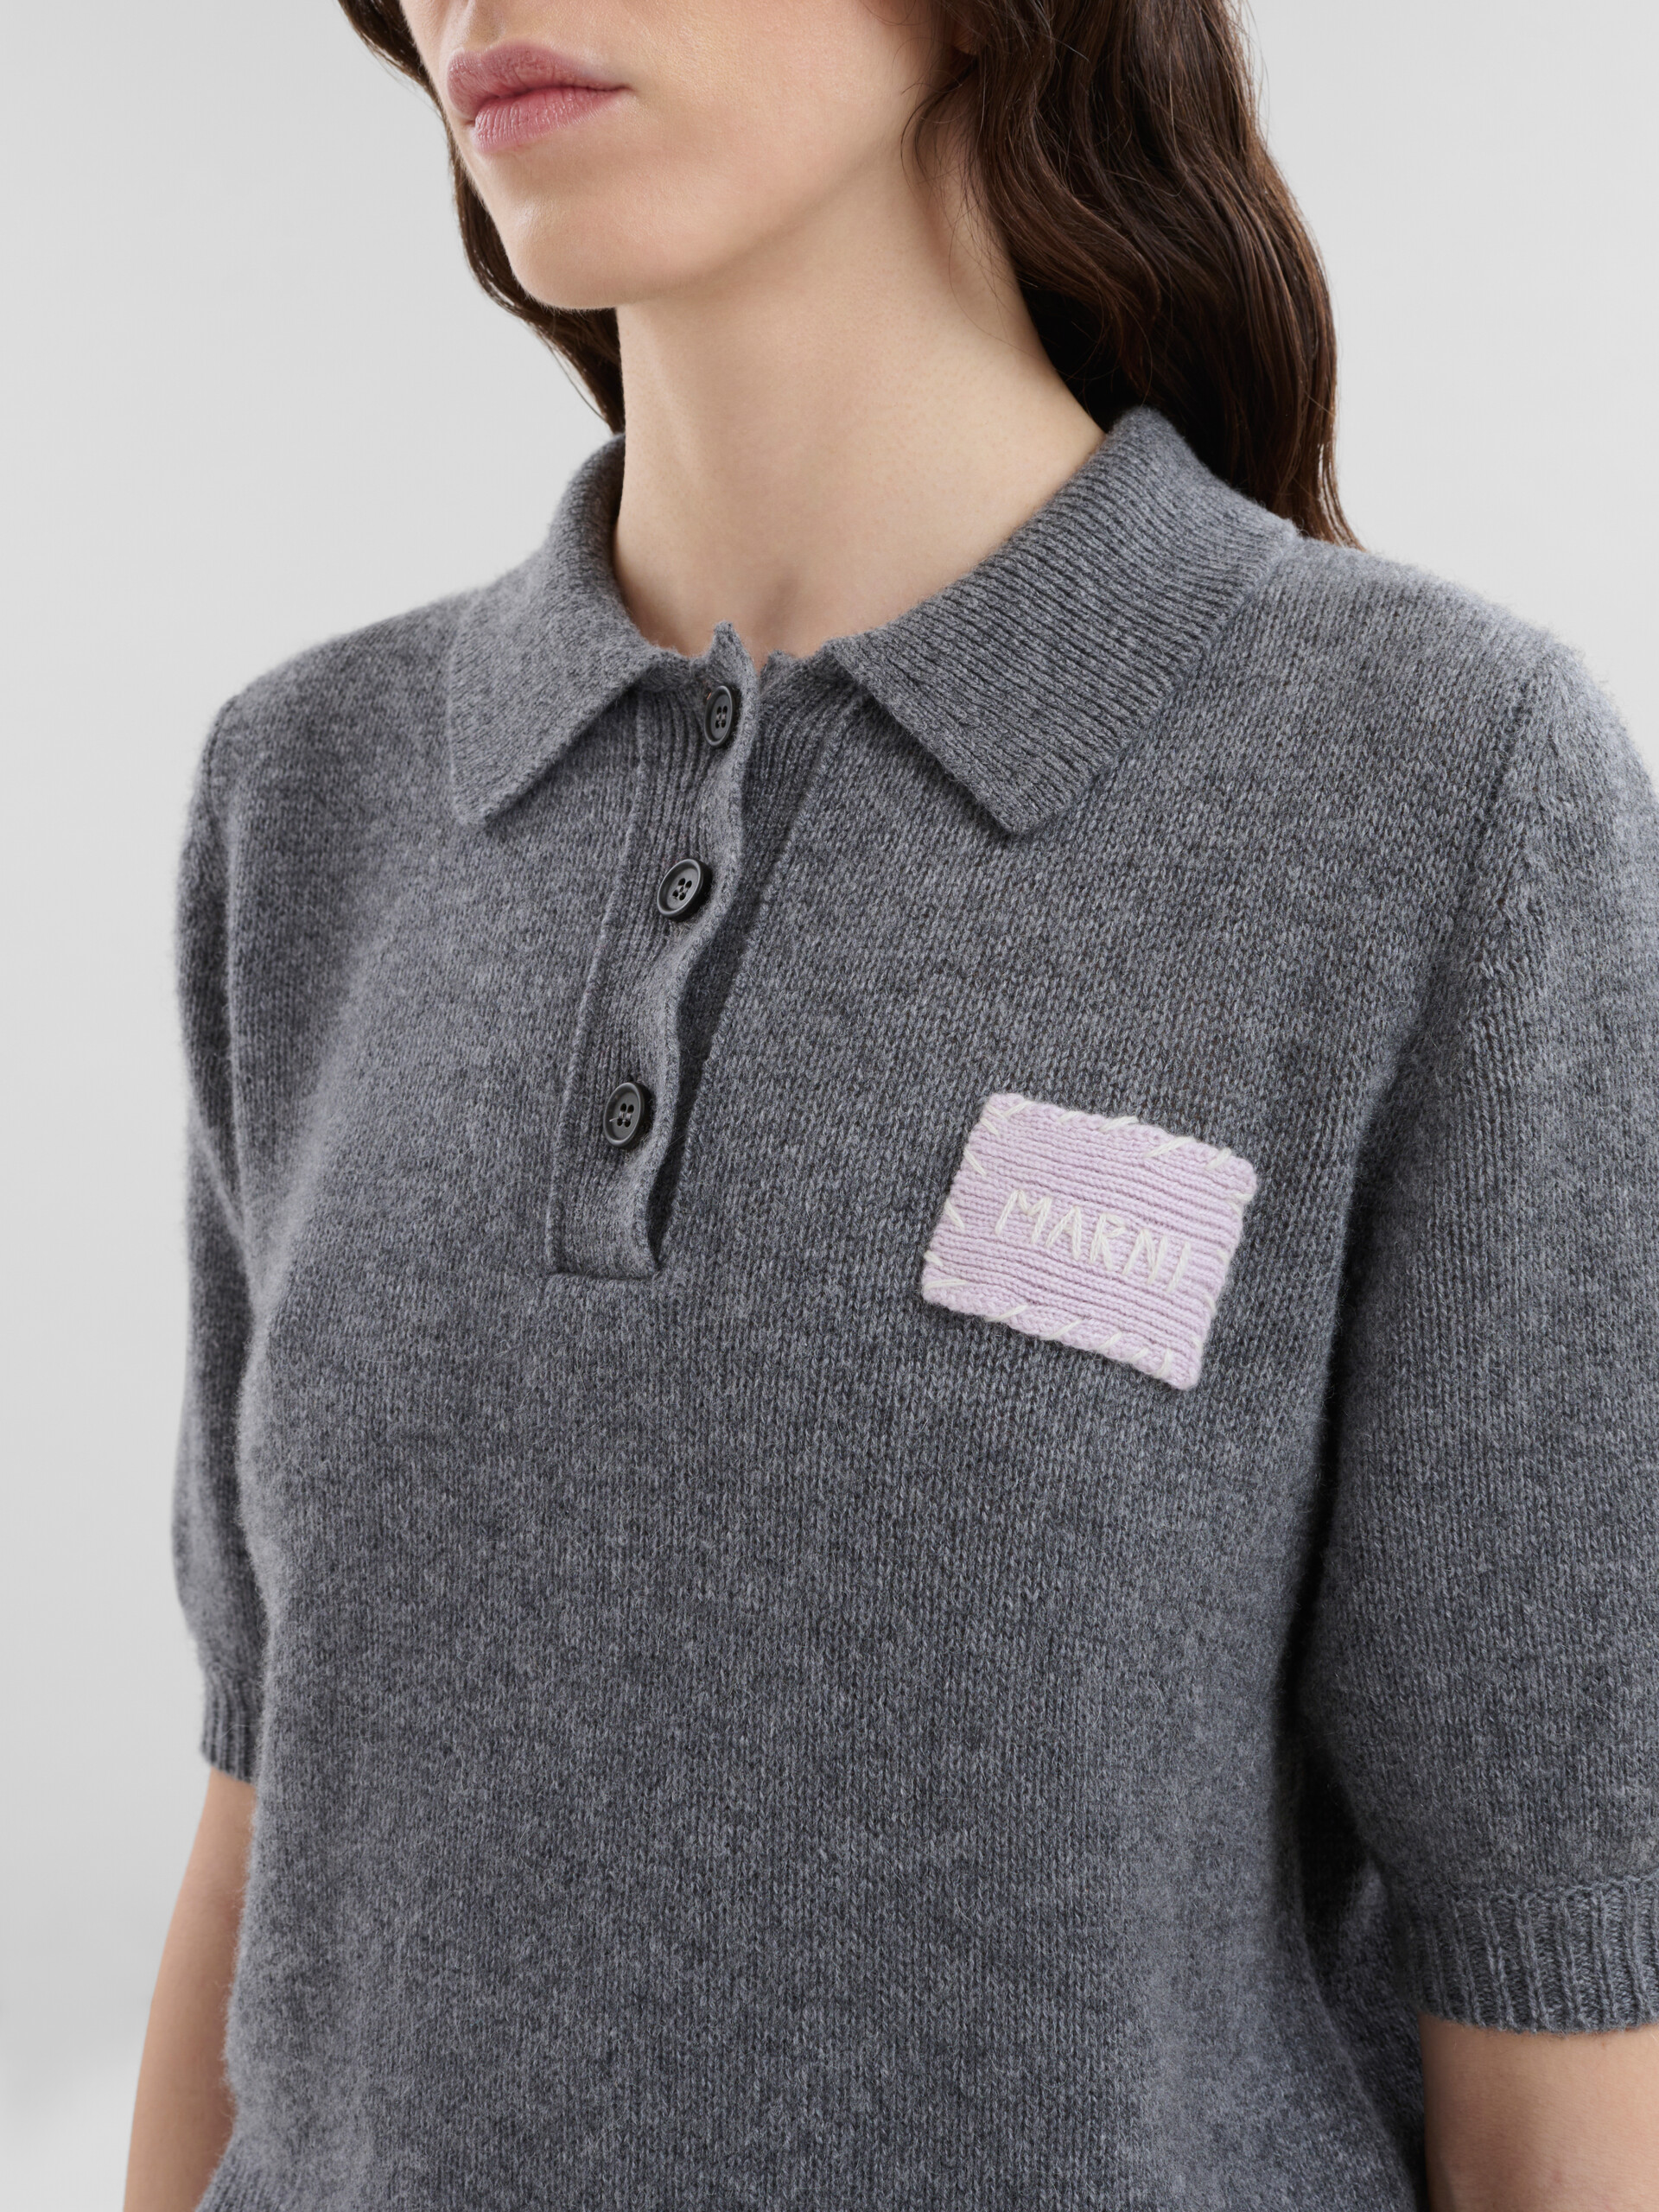 Pull polo en cachemire gris avec patch Marni - Chemises - Image 4